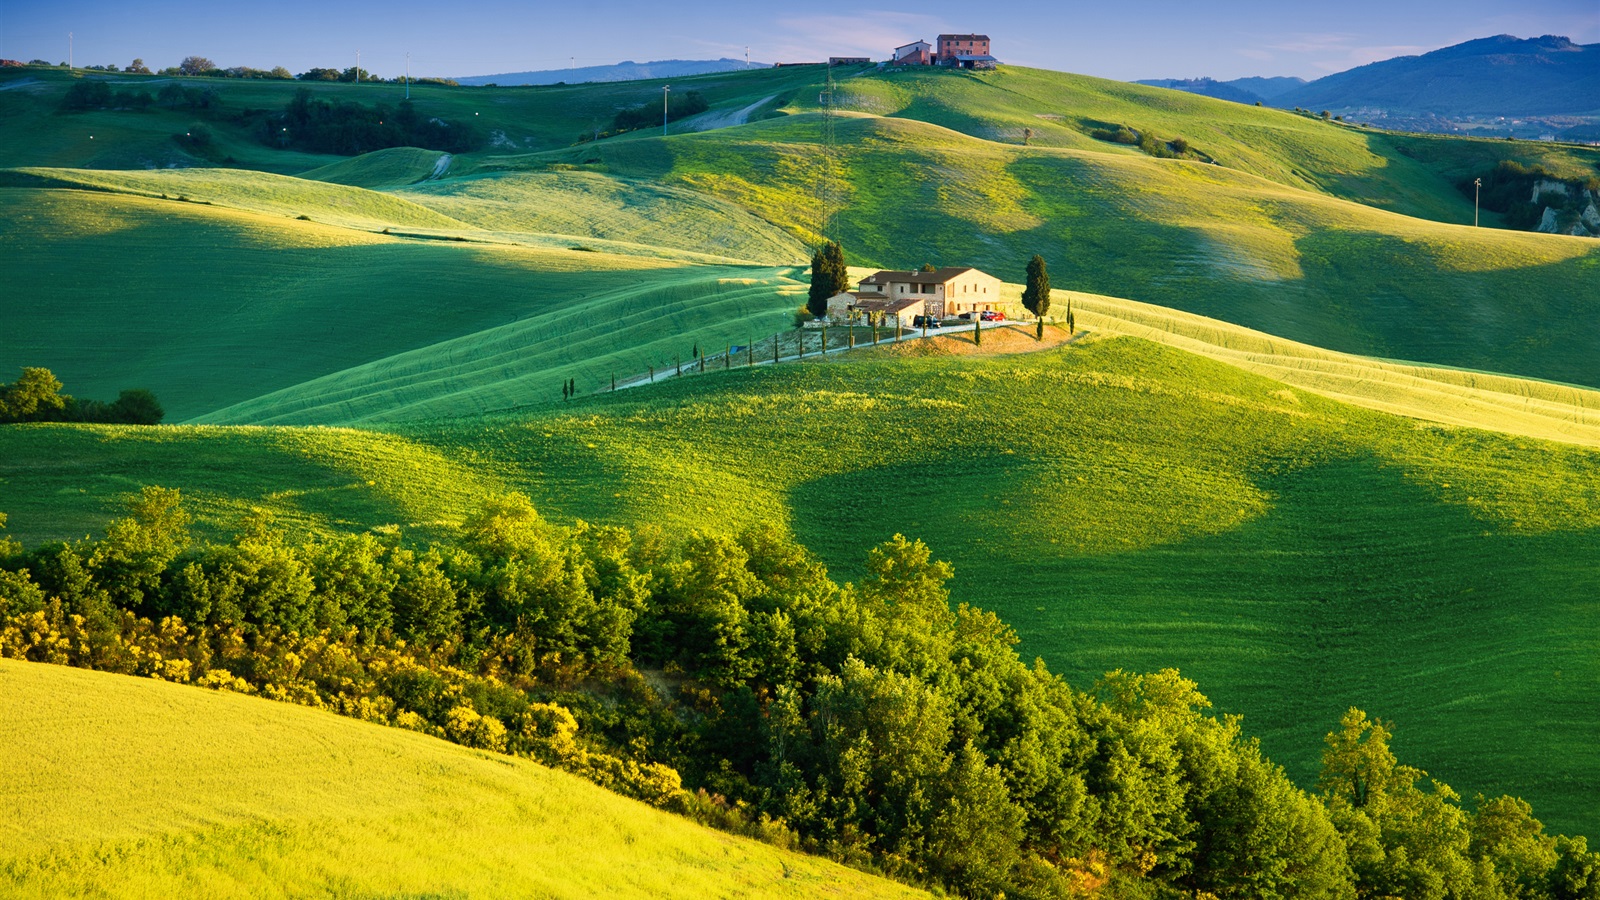 イタリア、緑の野原、美しい風景 1600x900 壁紙 背景画像